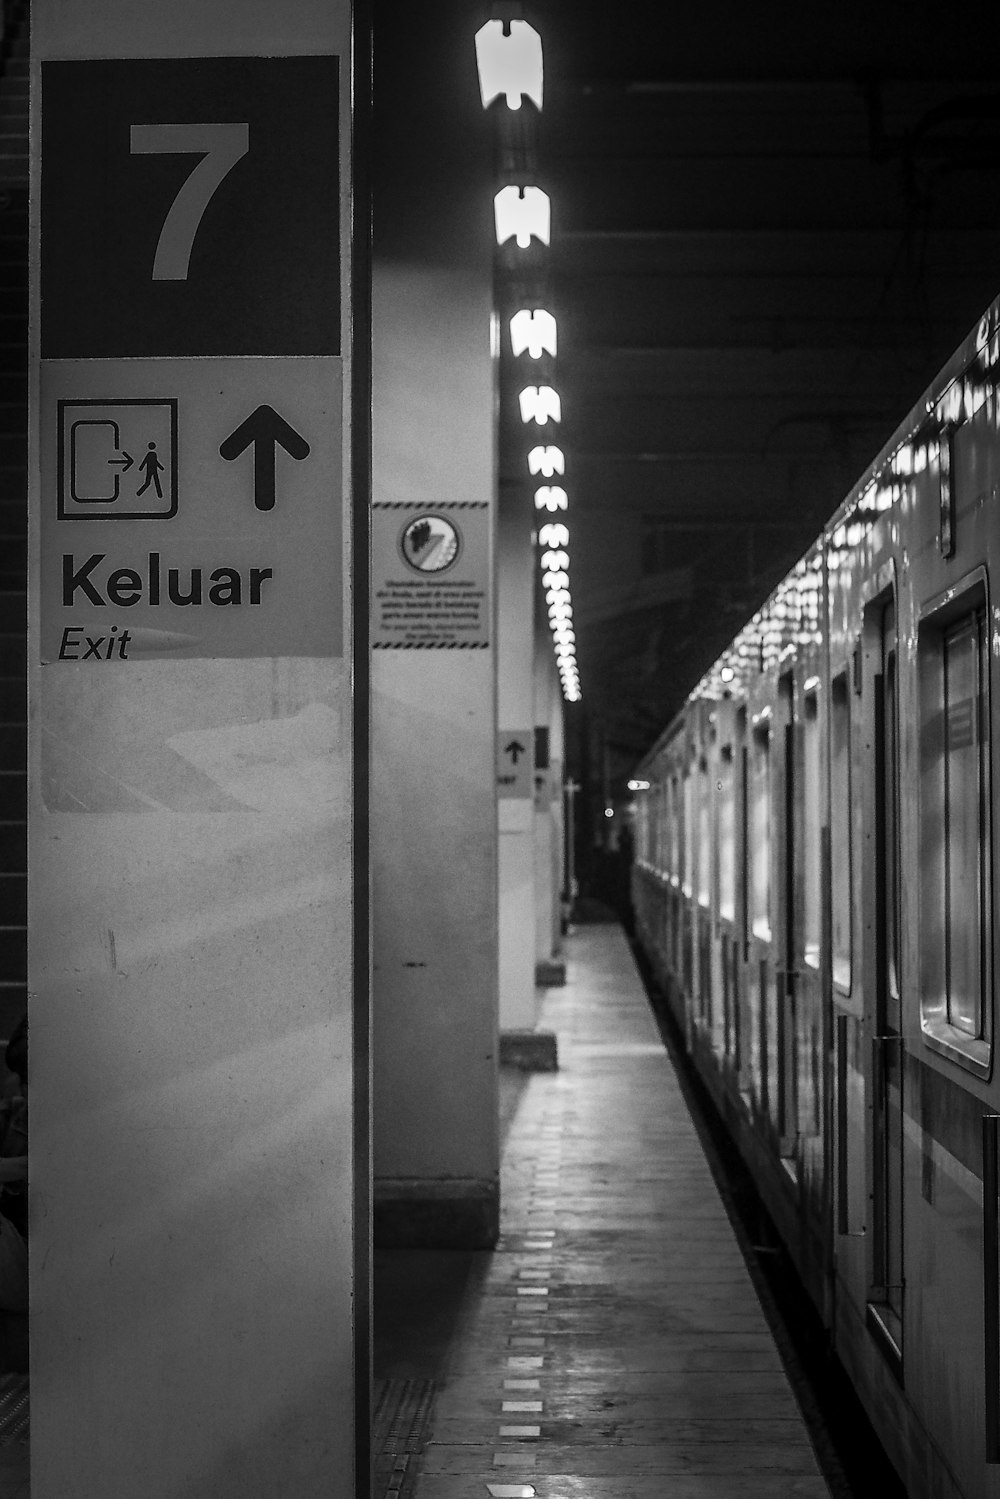 una foto in bianco e nero di un treno in una stazione